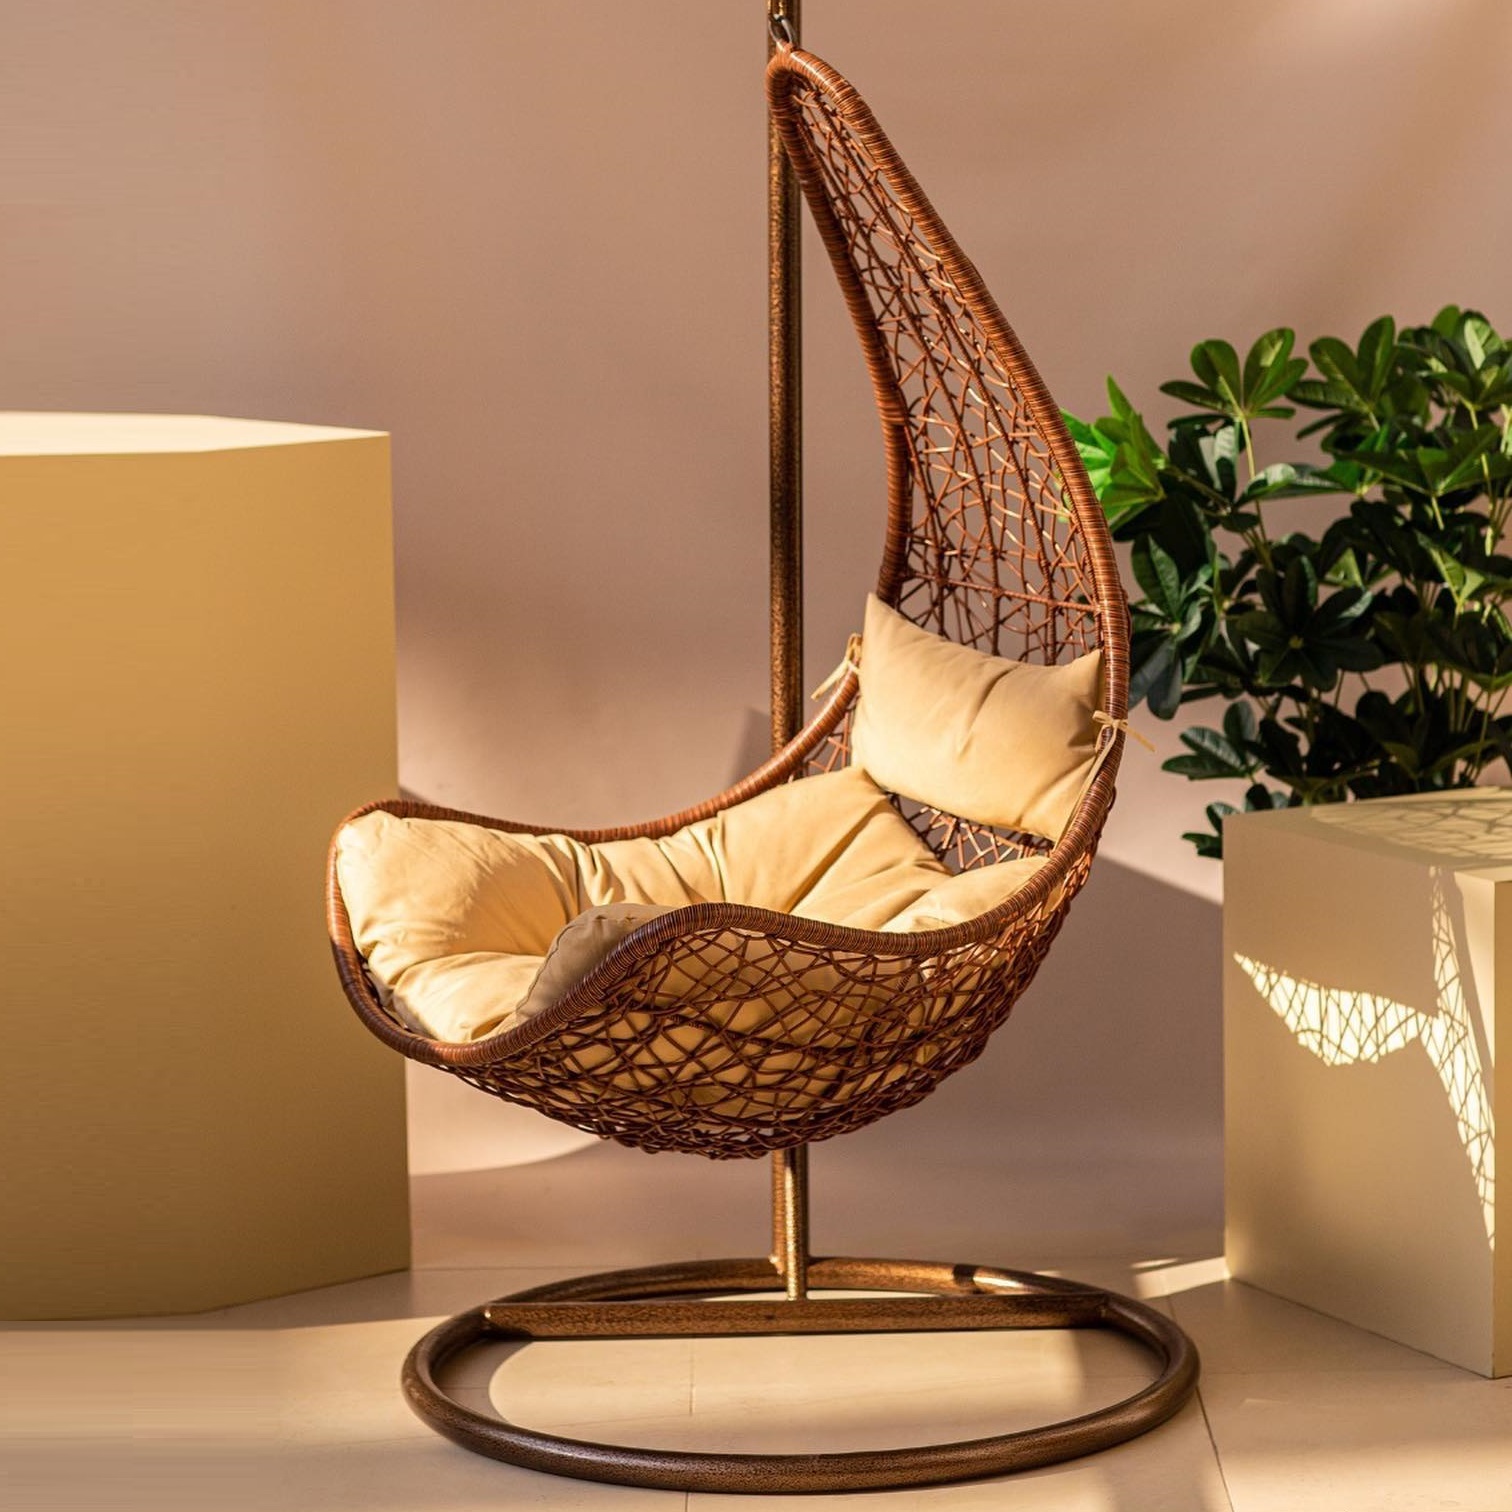 Кресло подвесное Art and craft furniture коричневое, цвет коричневый - фото 7